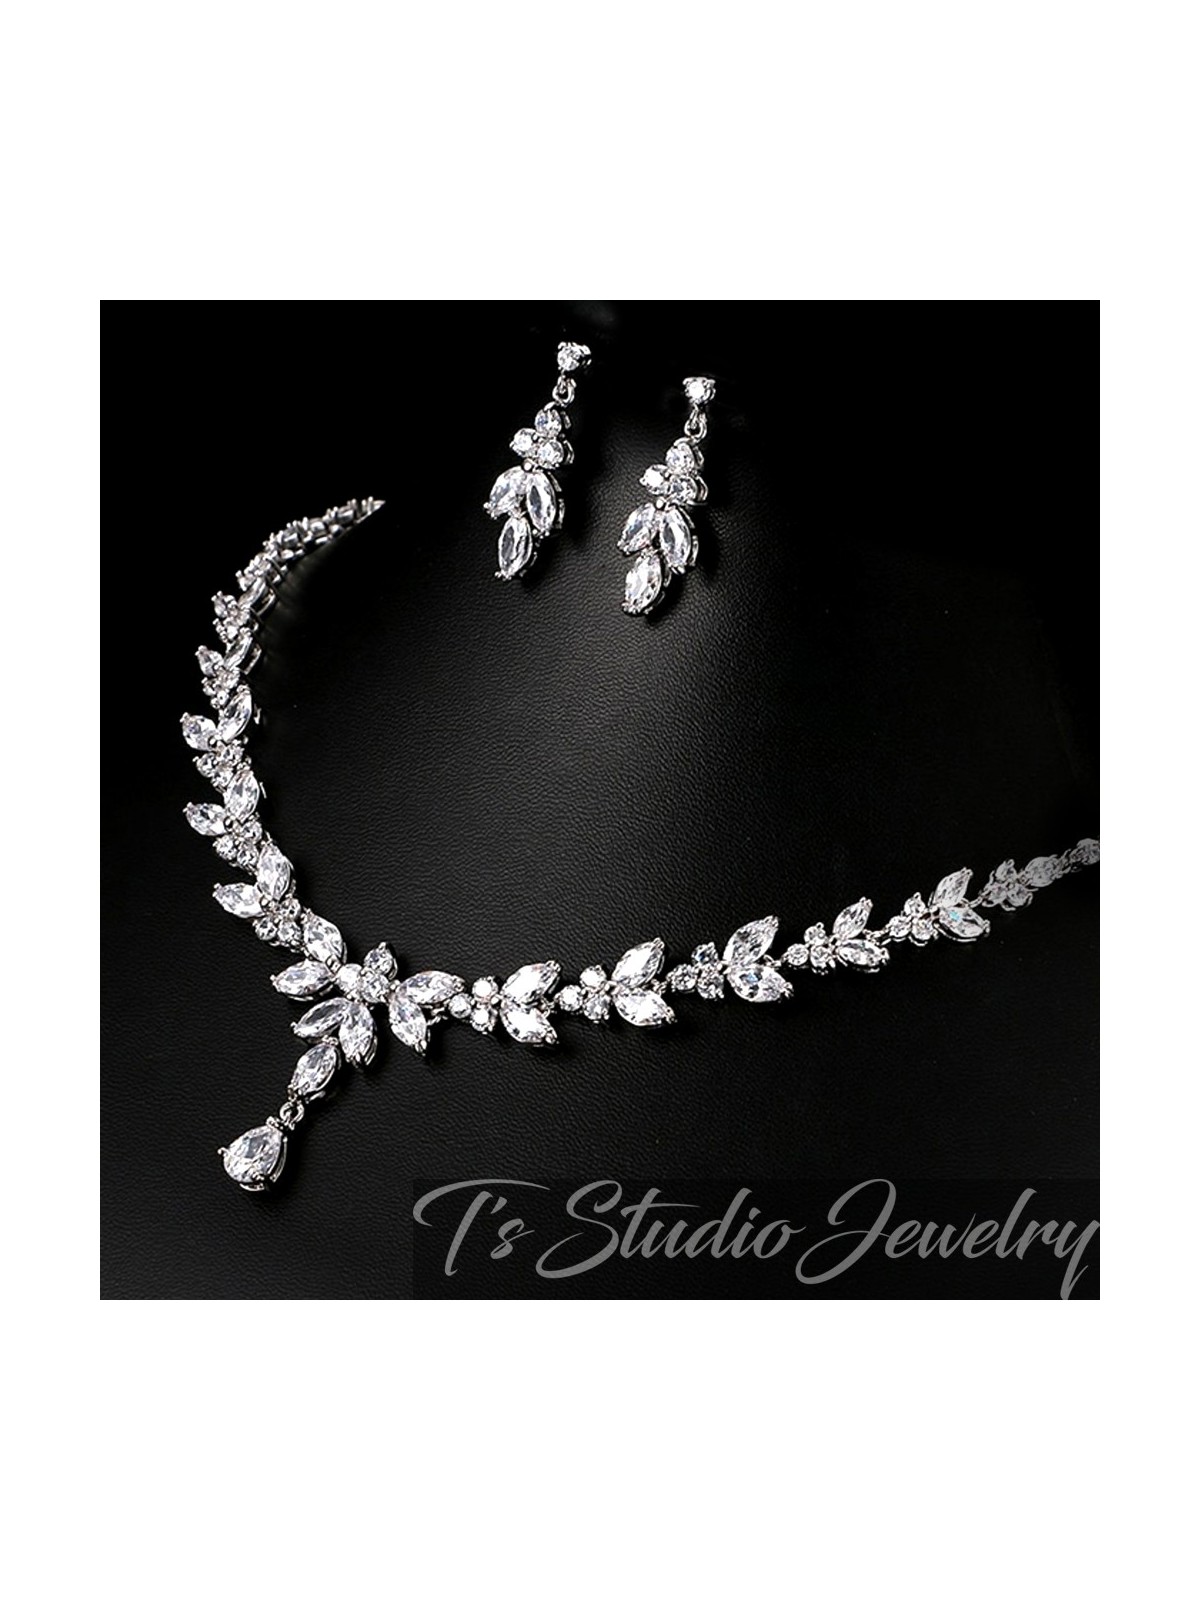 CZ Cubic Zirconia Crystal Bridal Jewelry Set